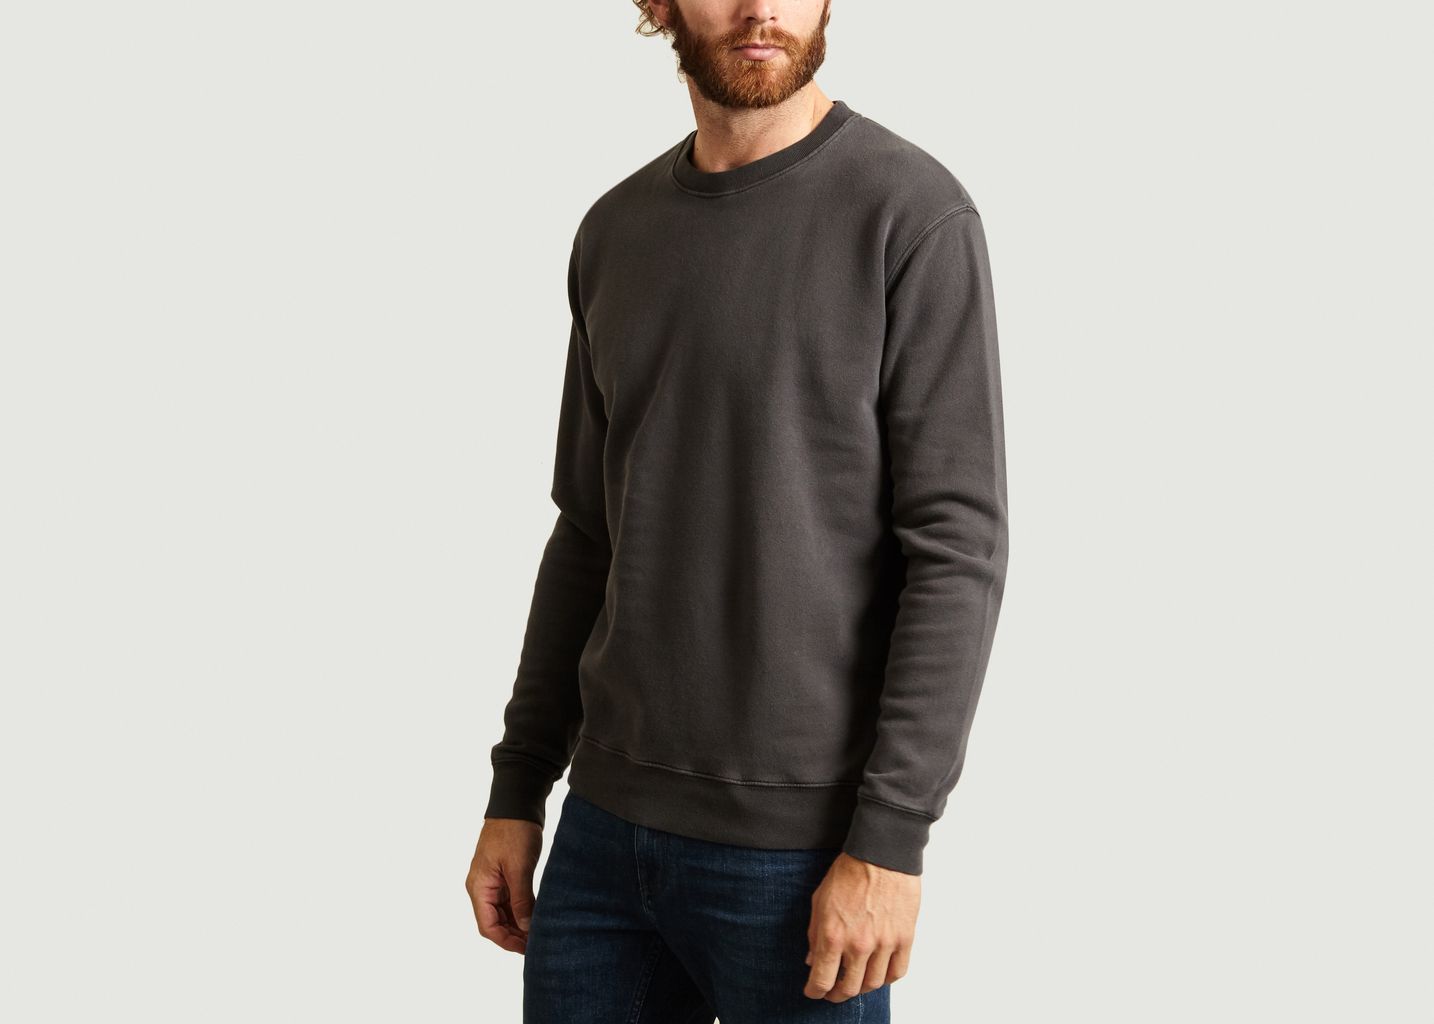 Pafwood Sweatshirt - American Vintage